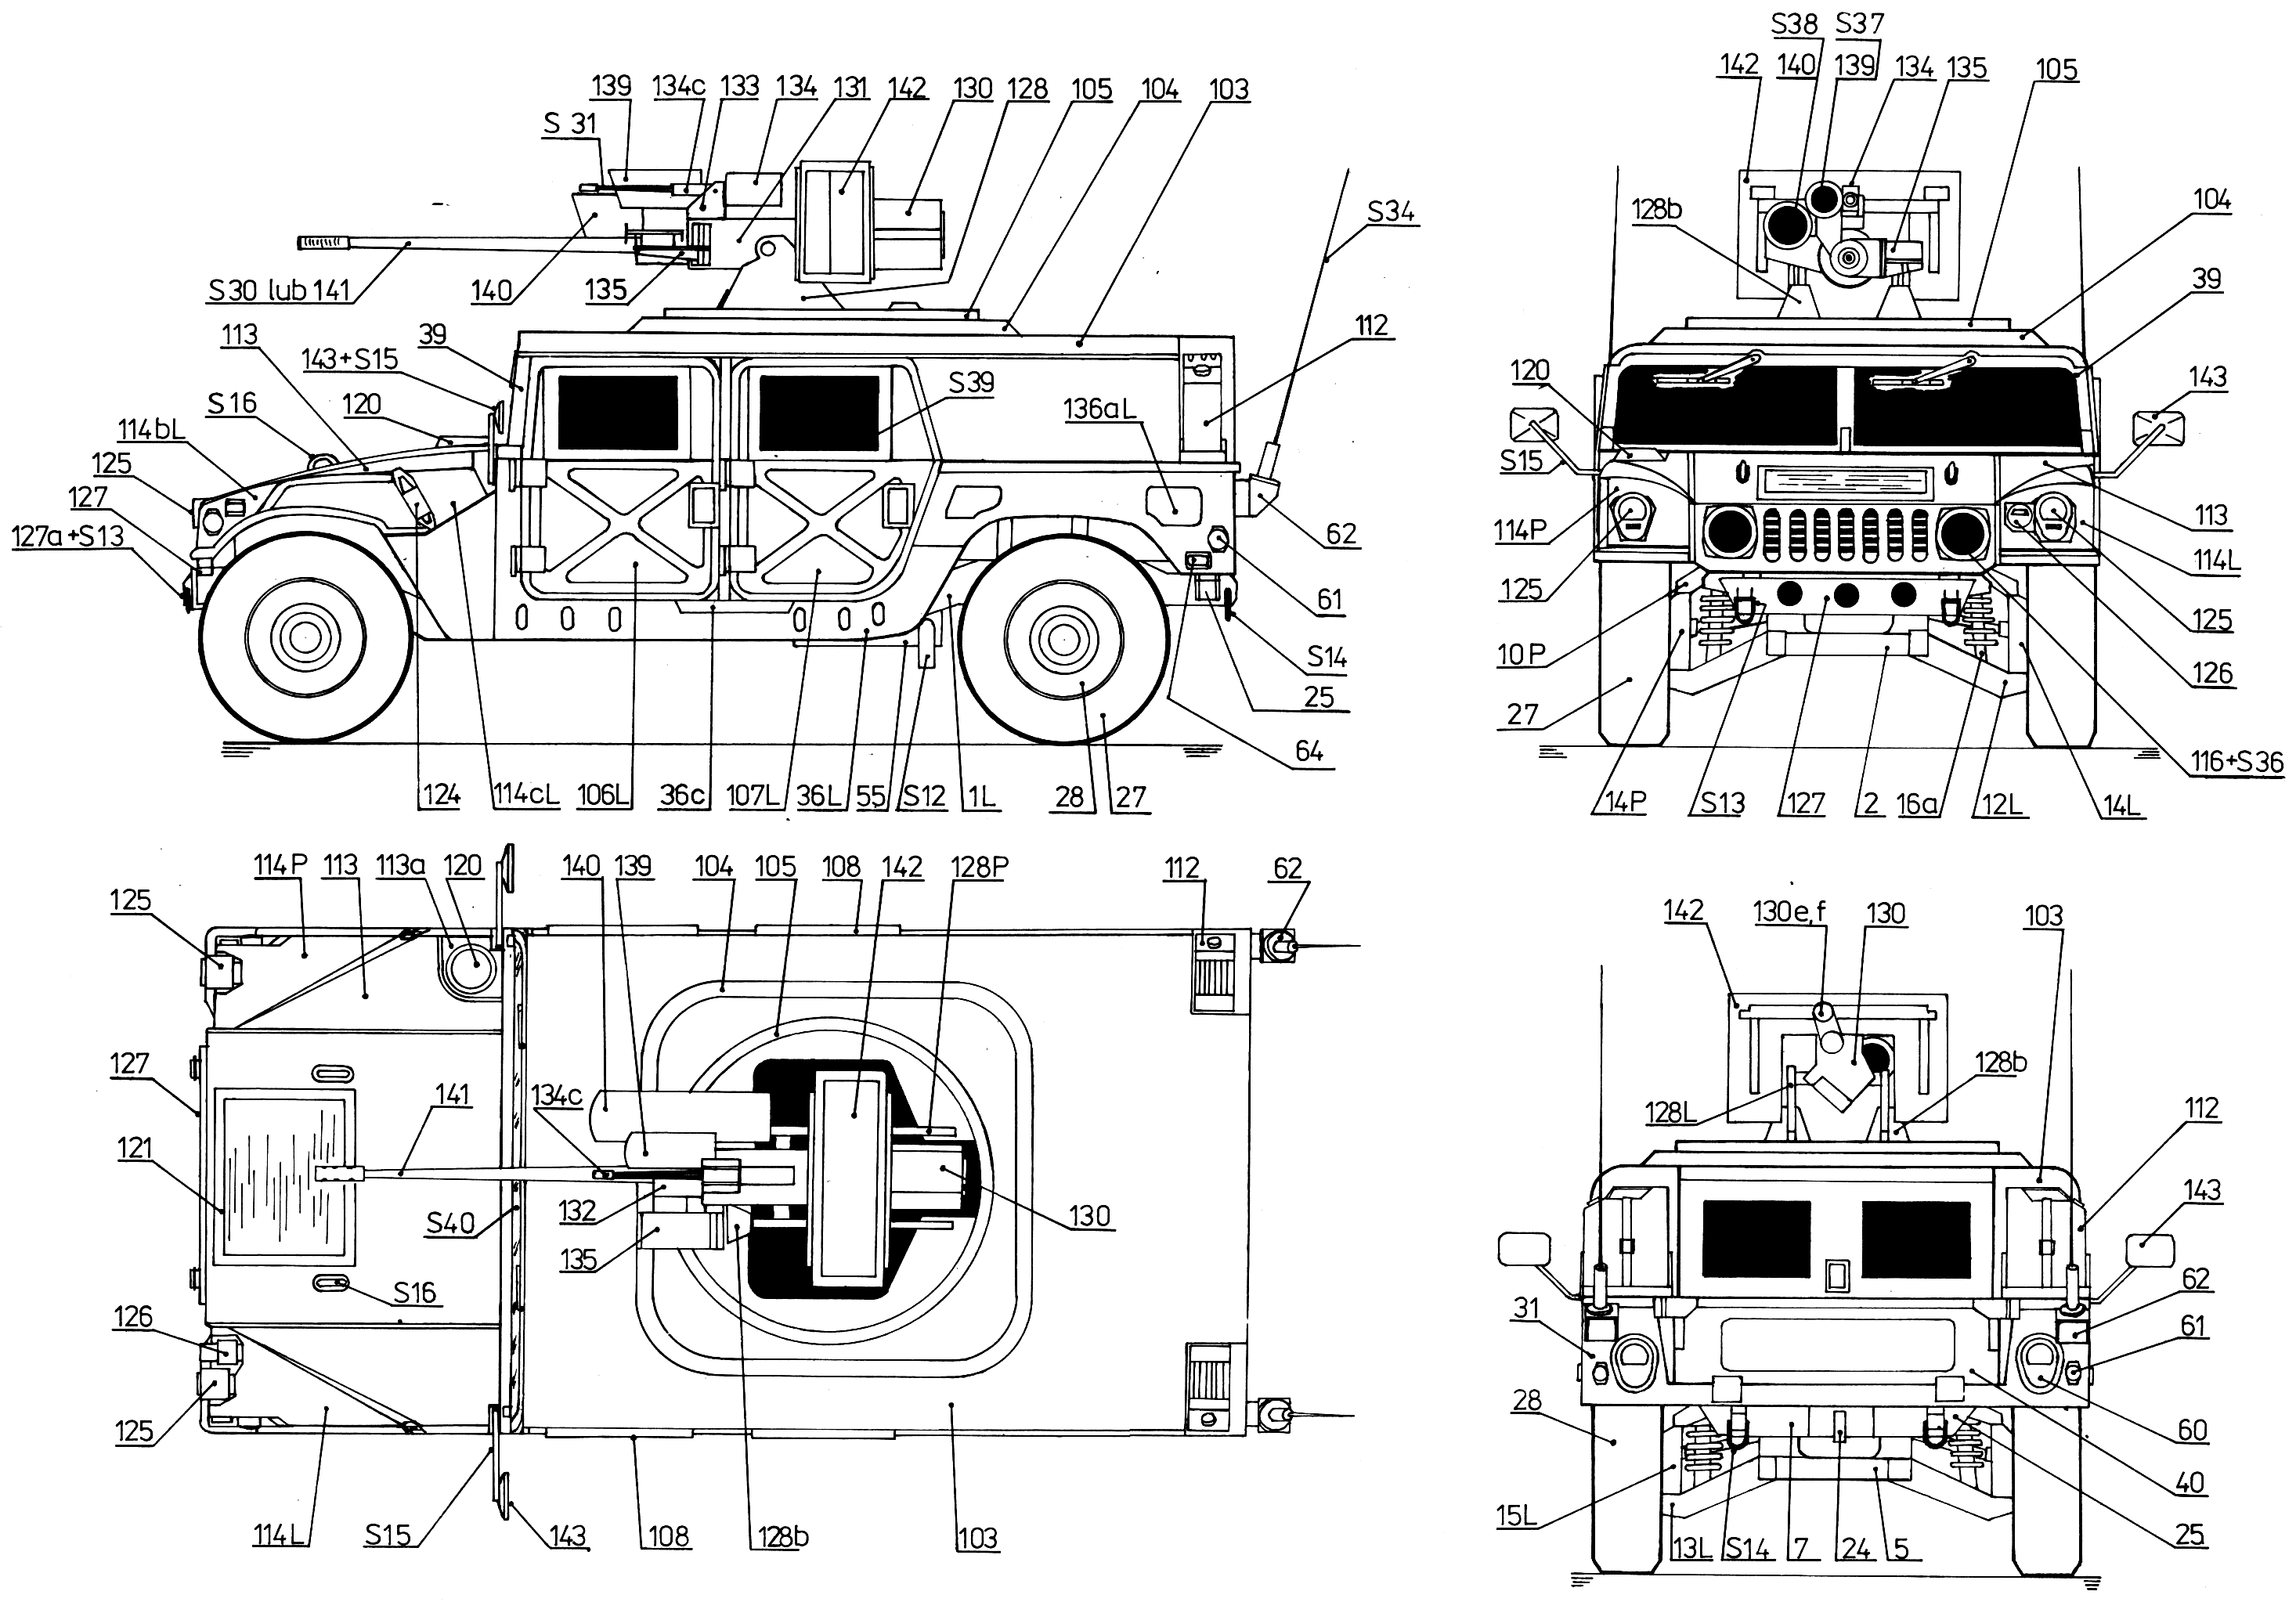 Hummer M242 Bushmaster blueprints